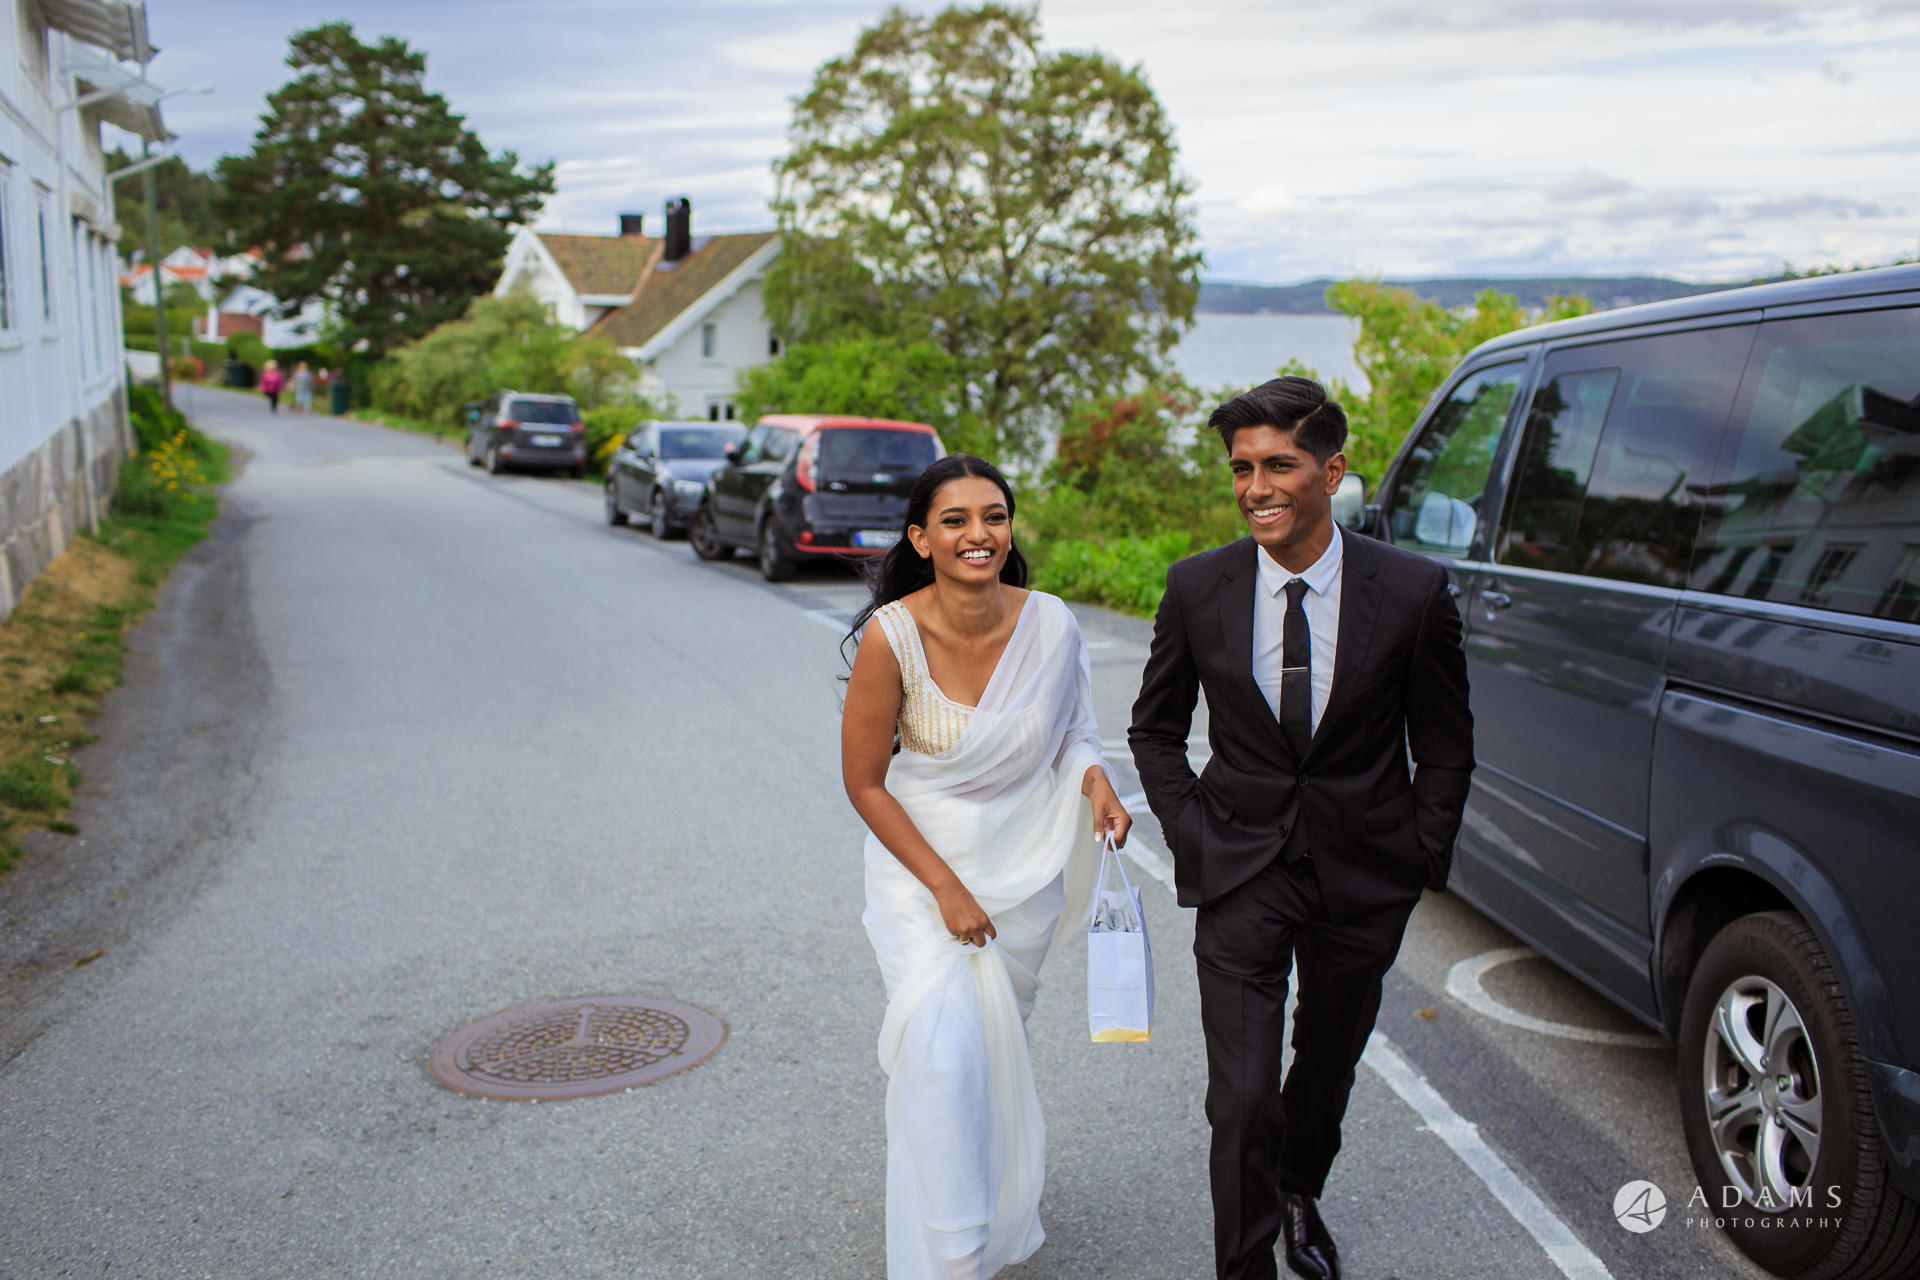 Engagement Photos near Oslo, Norway couple walking